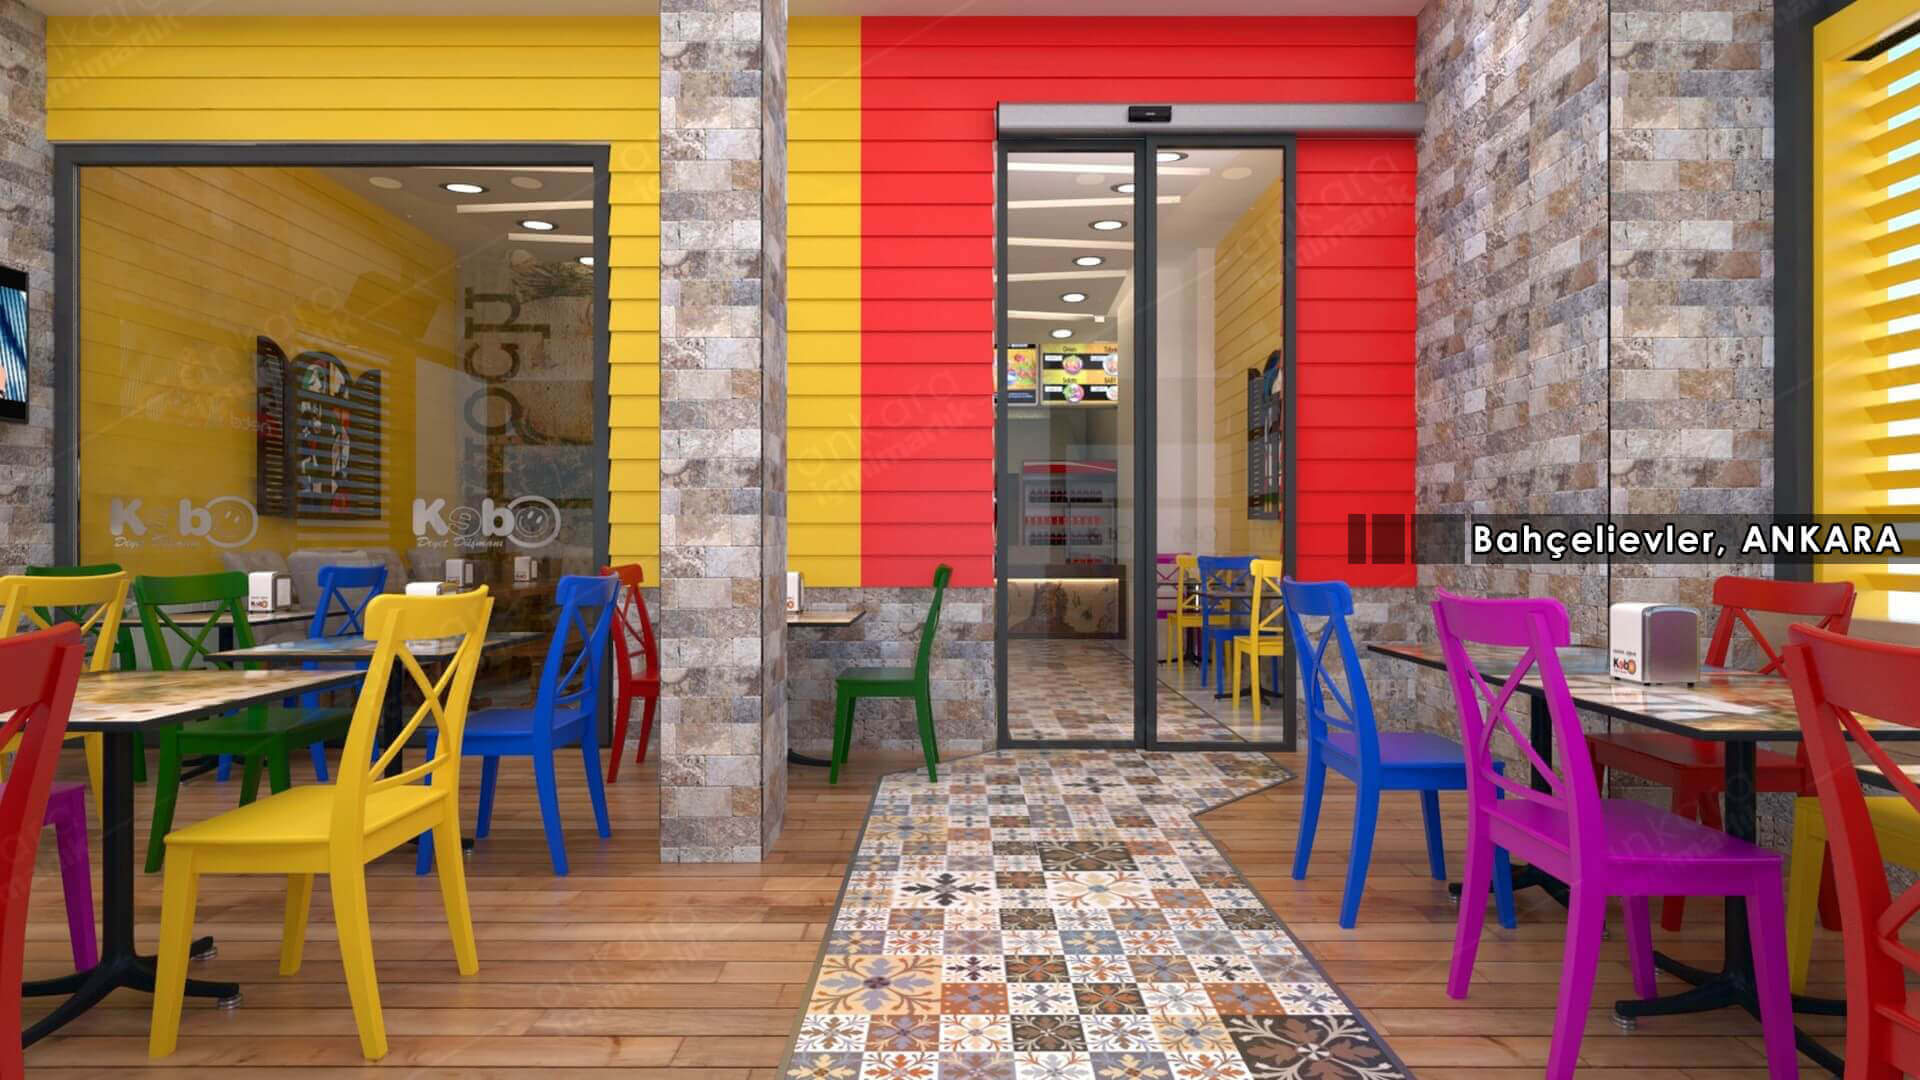  restaurant interior design